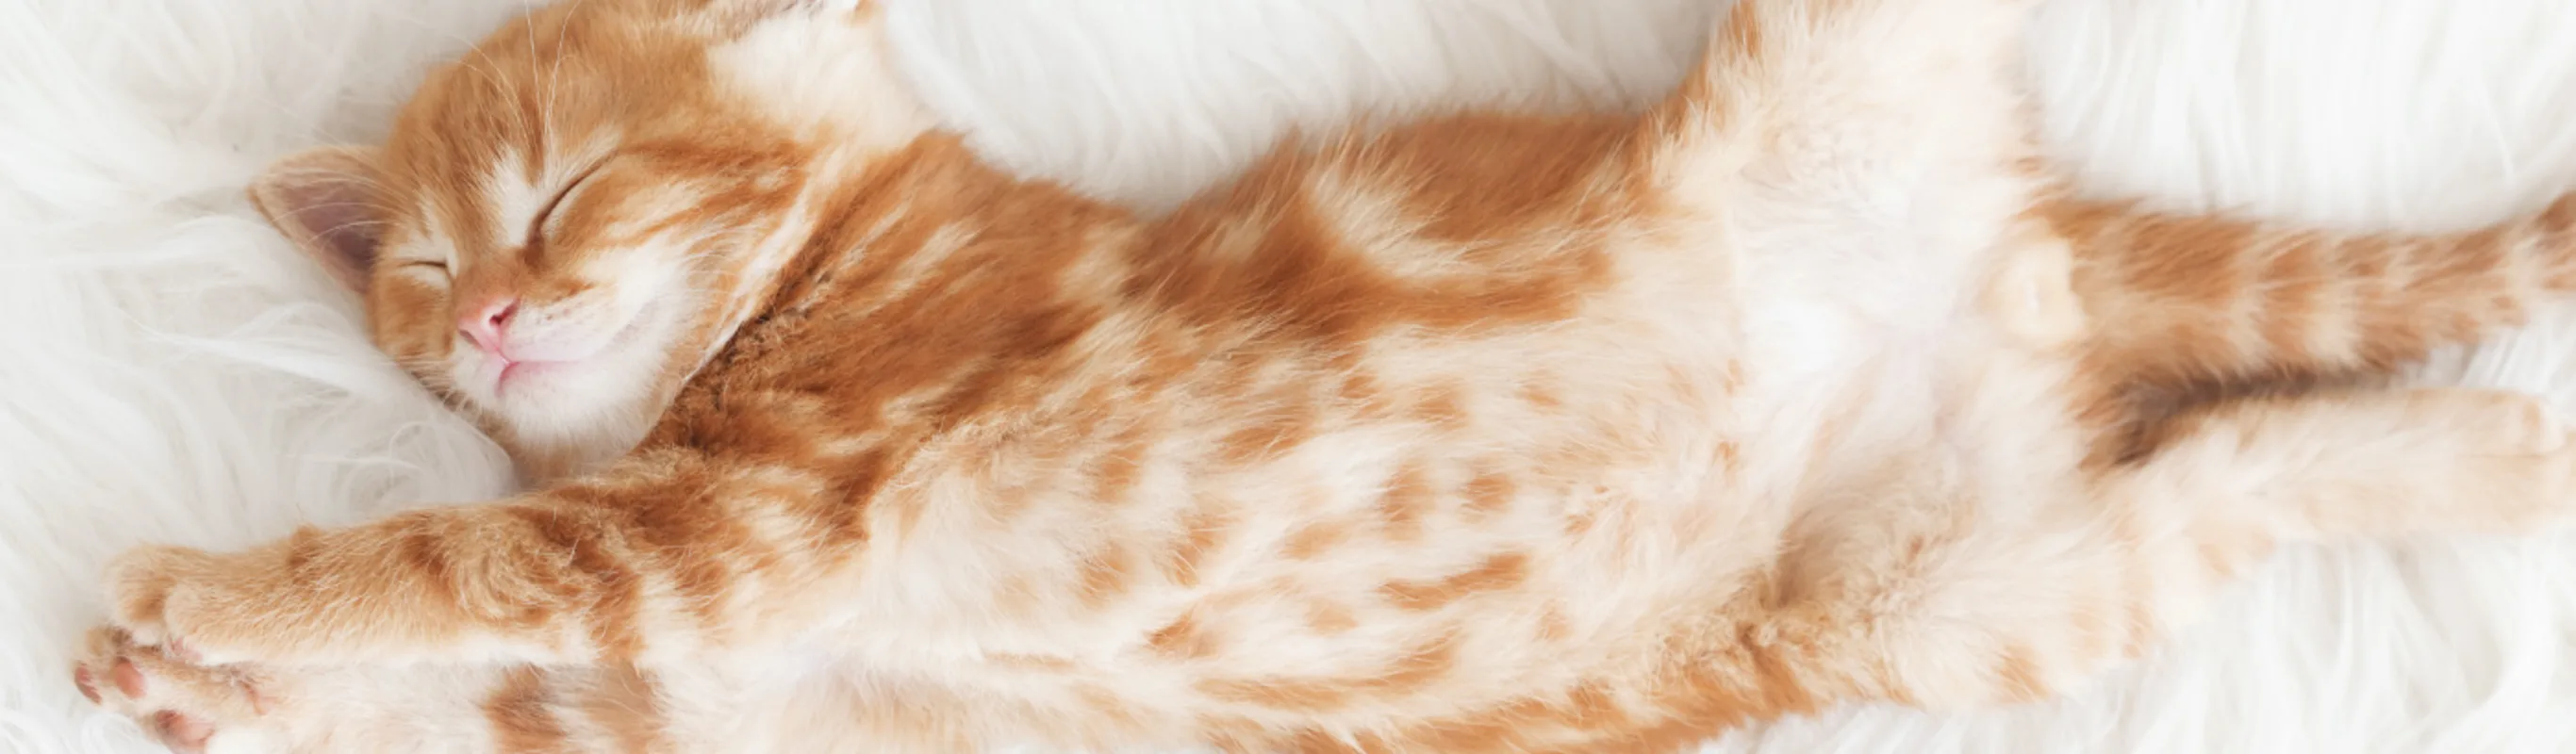 Orange Kitten Stretching